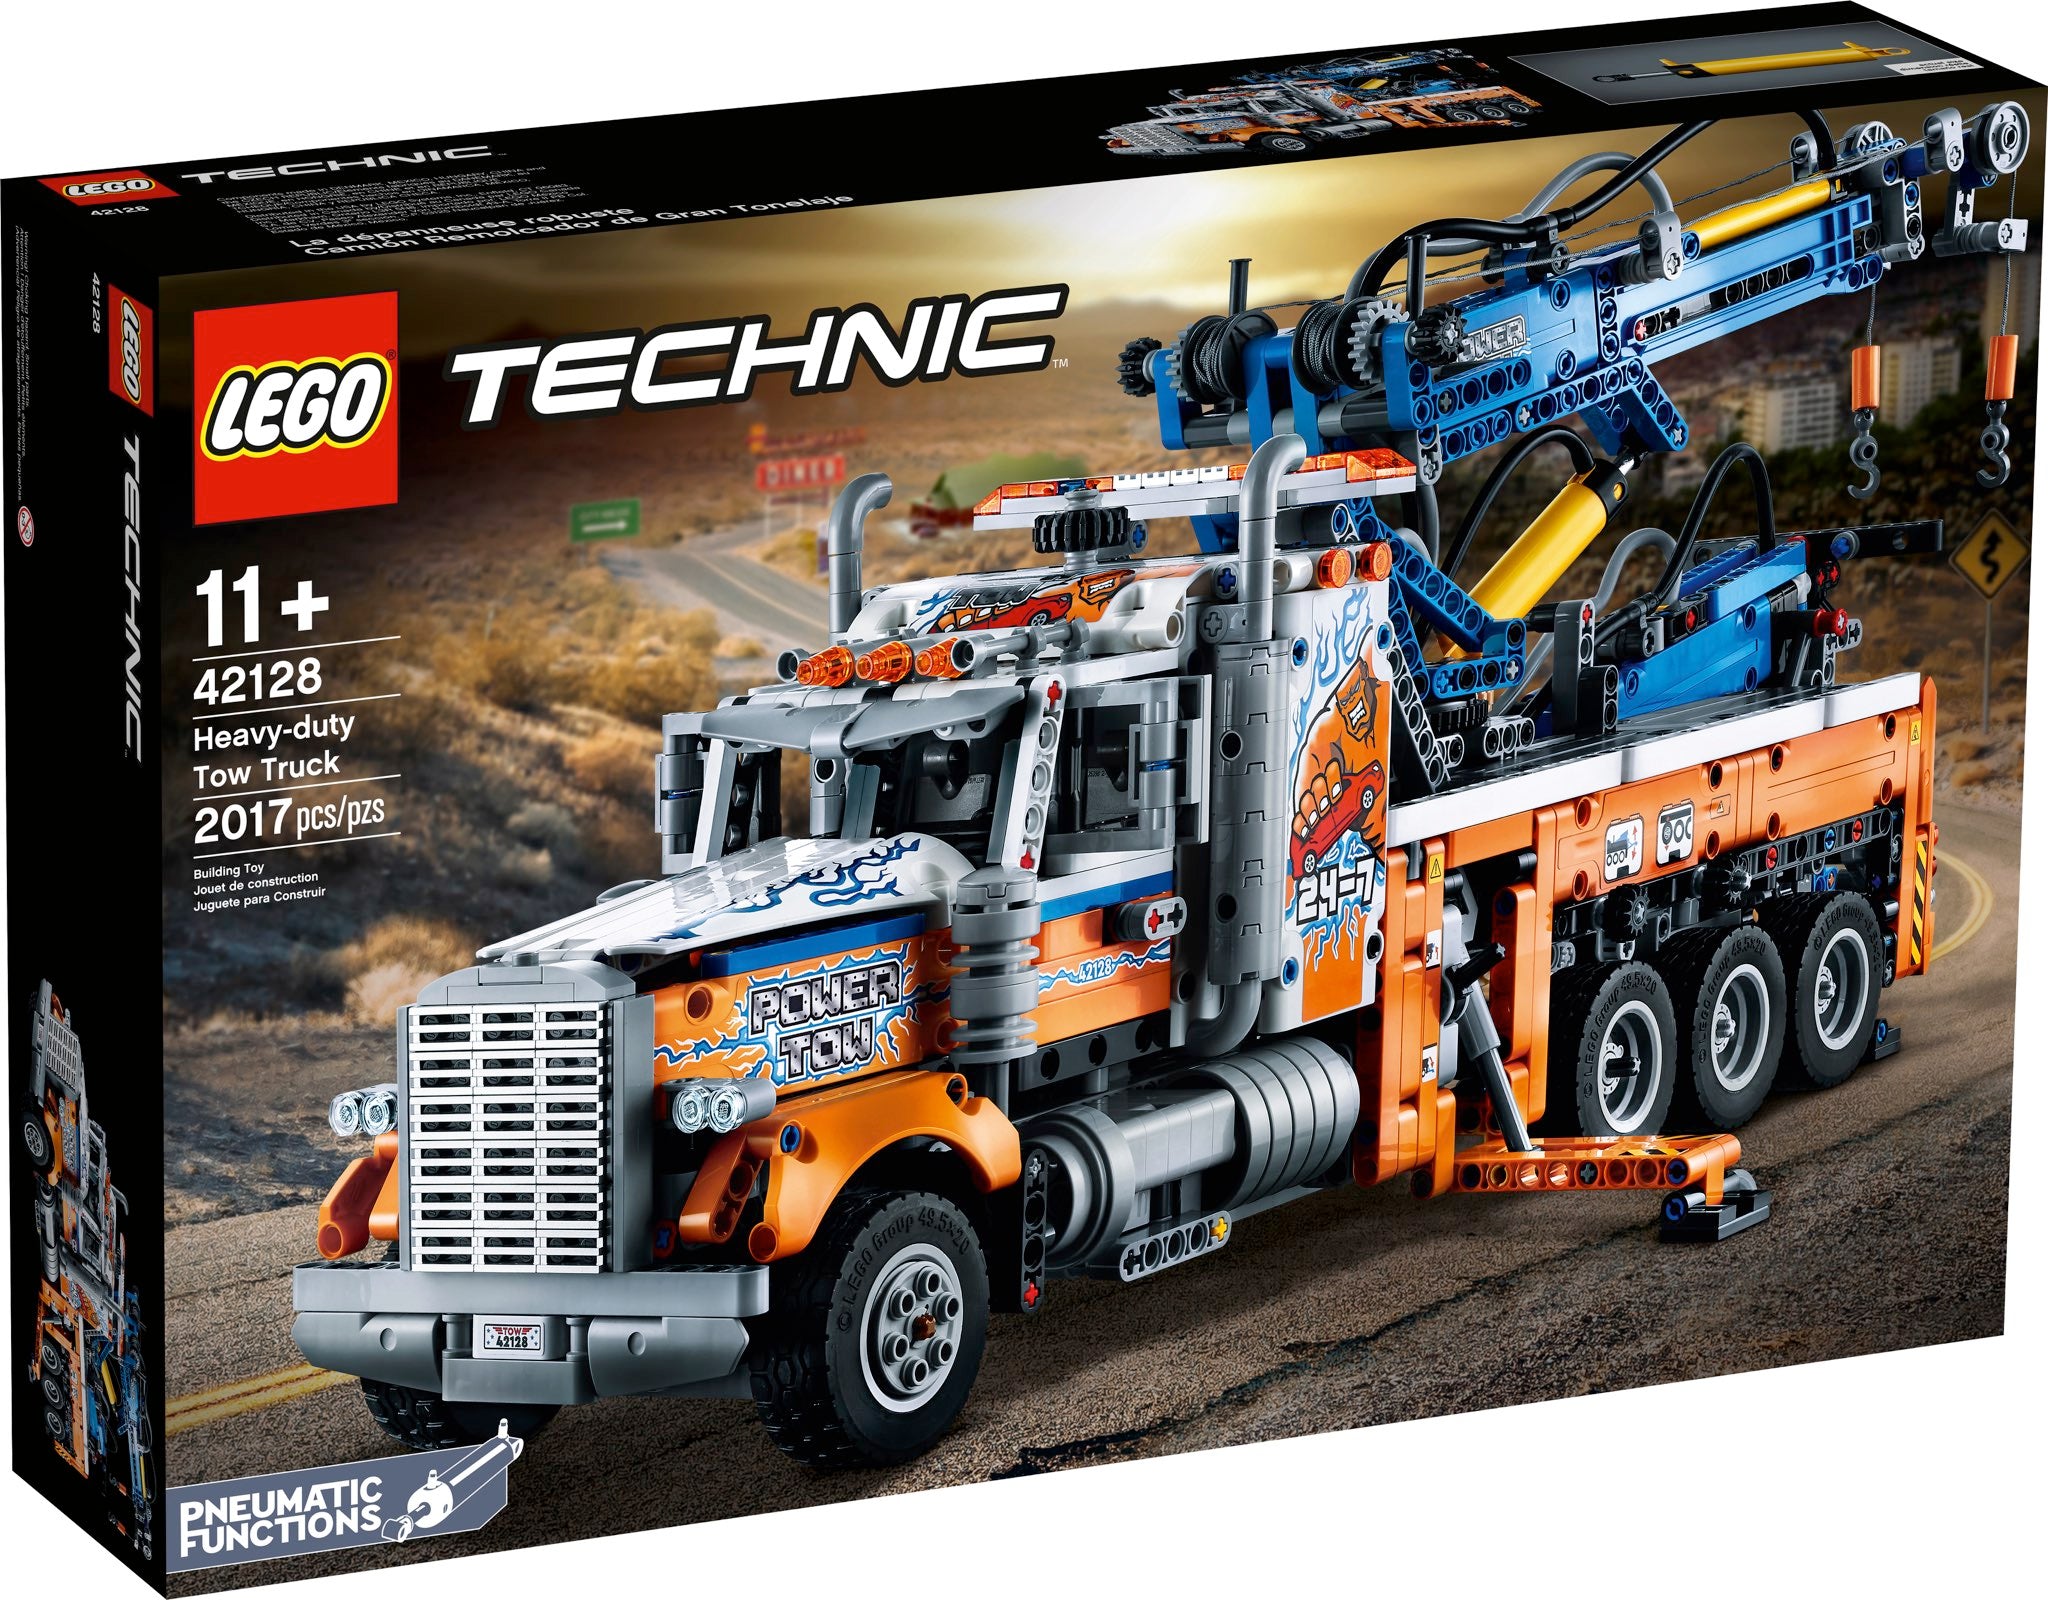 LEGO Technic Schwerlast-Abschleppwagen (42128) - im GOLDSTIEN.SHOP verfügbar mit Gratisversand ab Schweizer Lager! (5702016913354)